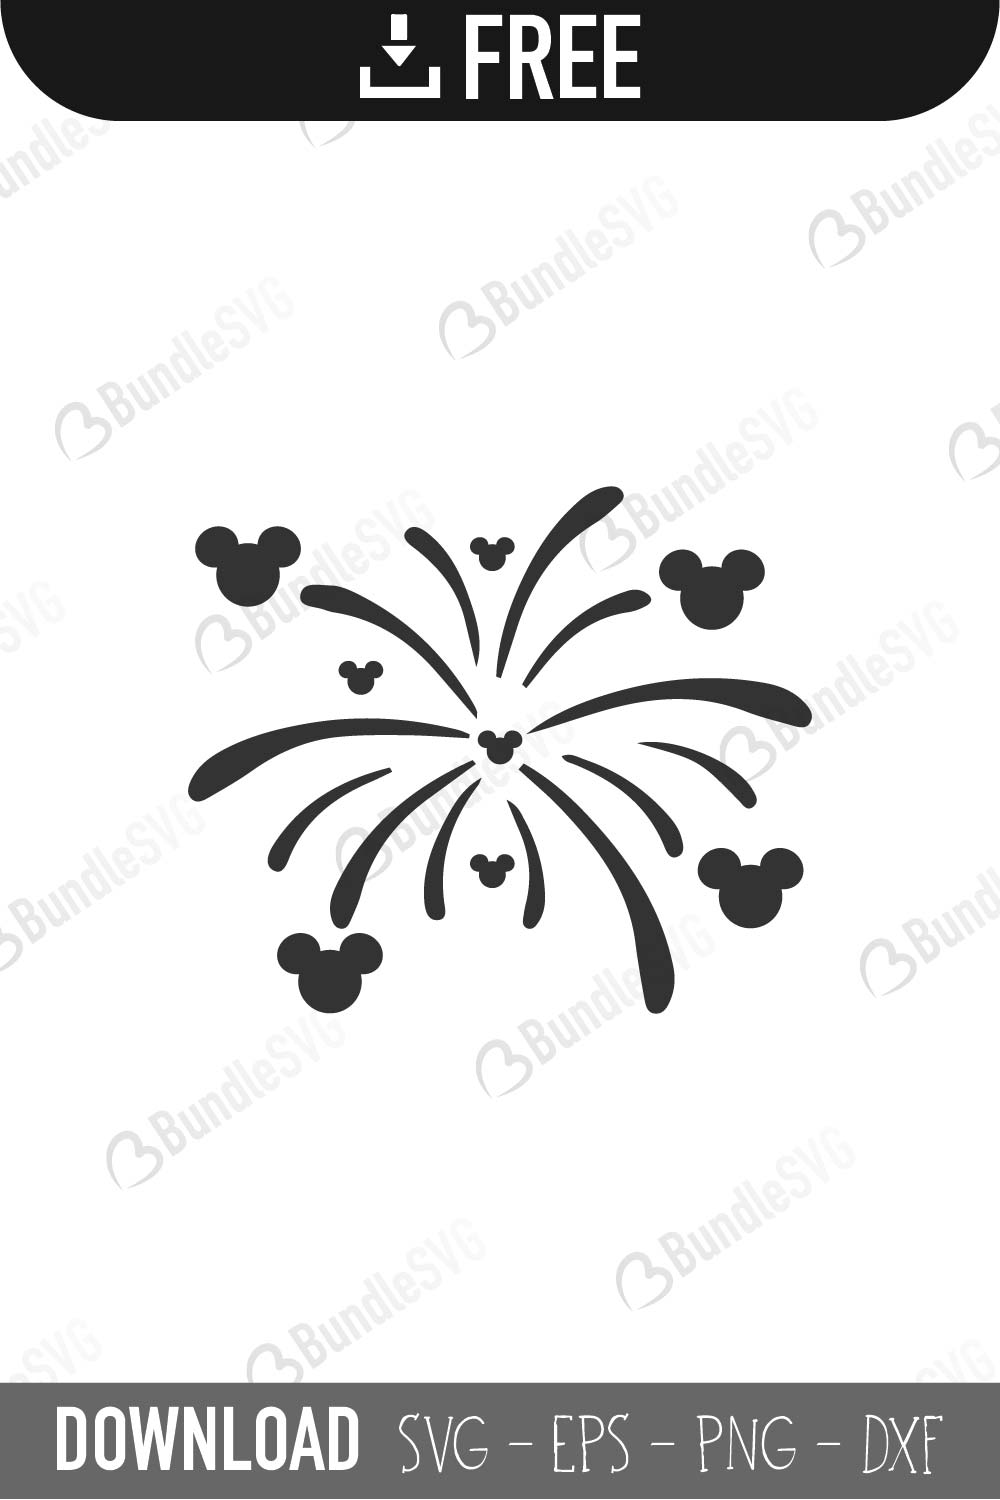 Download Disney Fireworks SVG Cut Files Free Download | BundleSVG